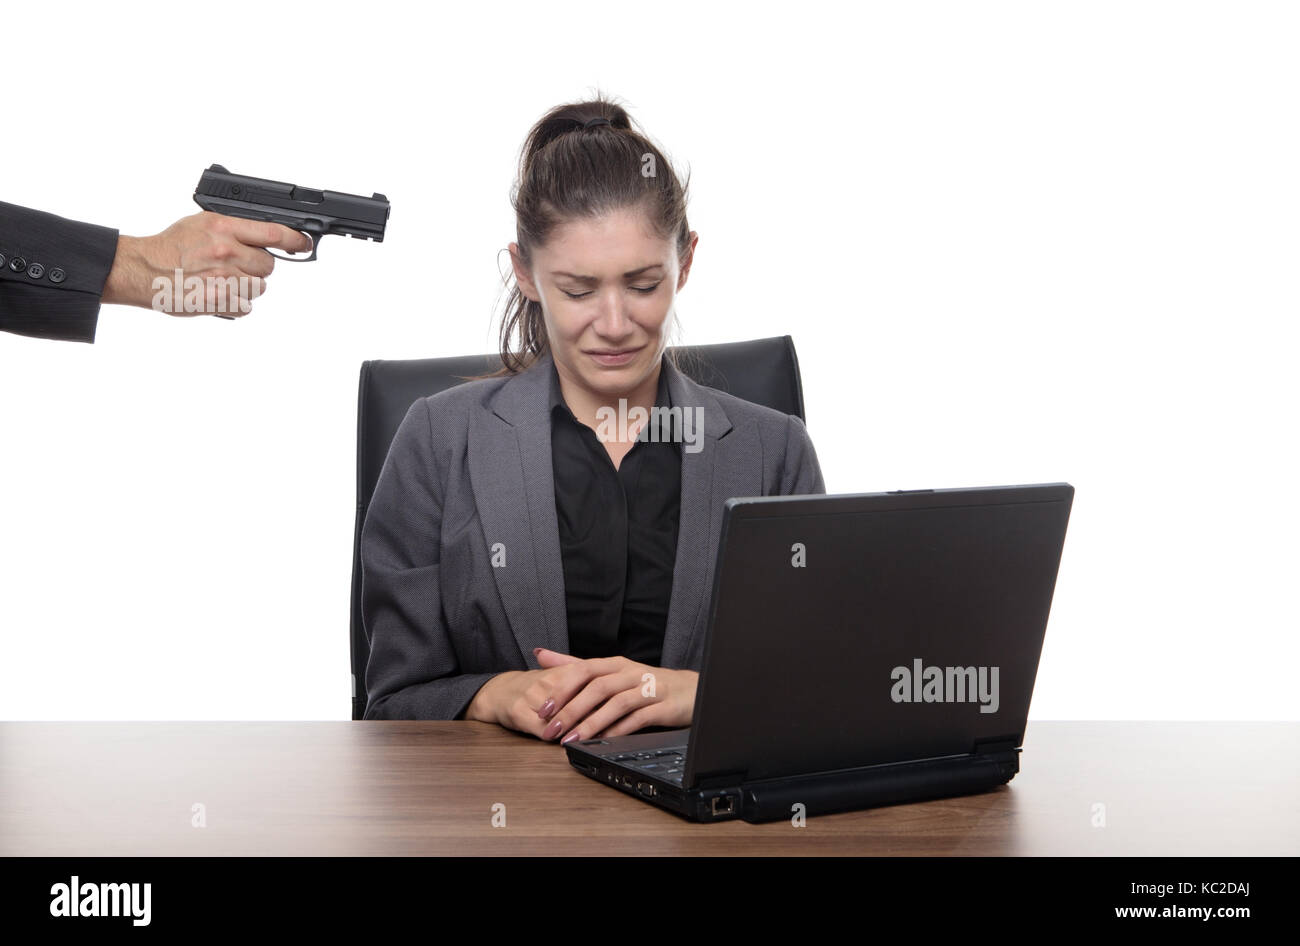 mujer-de-negocios-sentada-en-su-escritorio-con-una-pistola-apuntando-a-su-cabeza-kc2daj.jpg